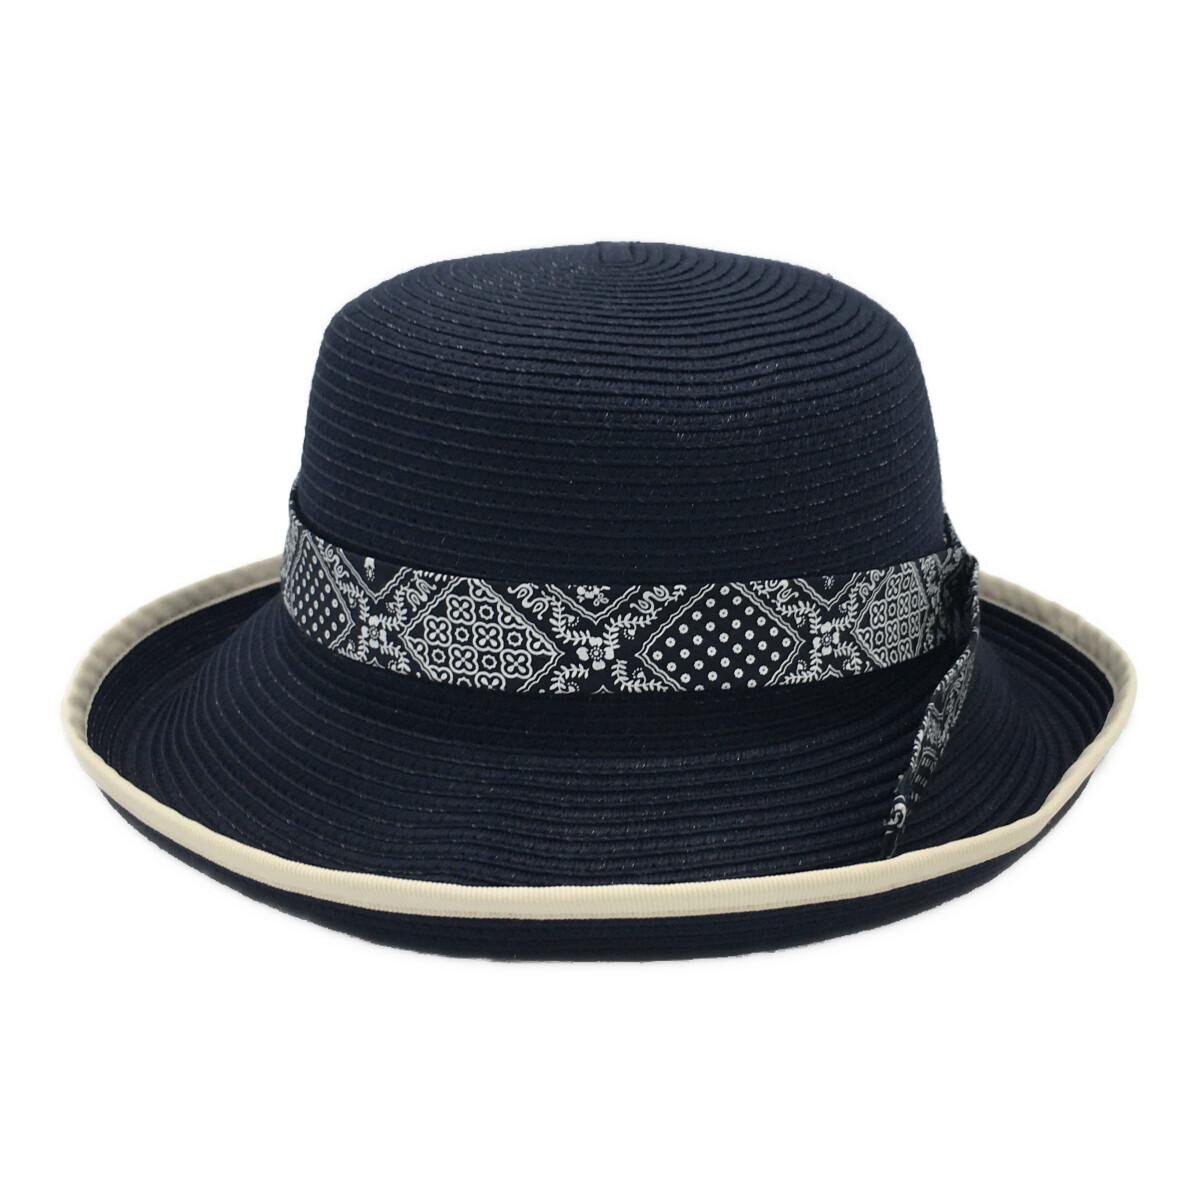 coco* Munsingwear wear *Munsingwear×reyn spooner * collaboration straw hat * navy * used *89303